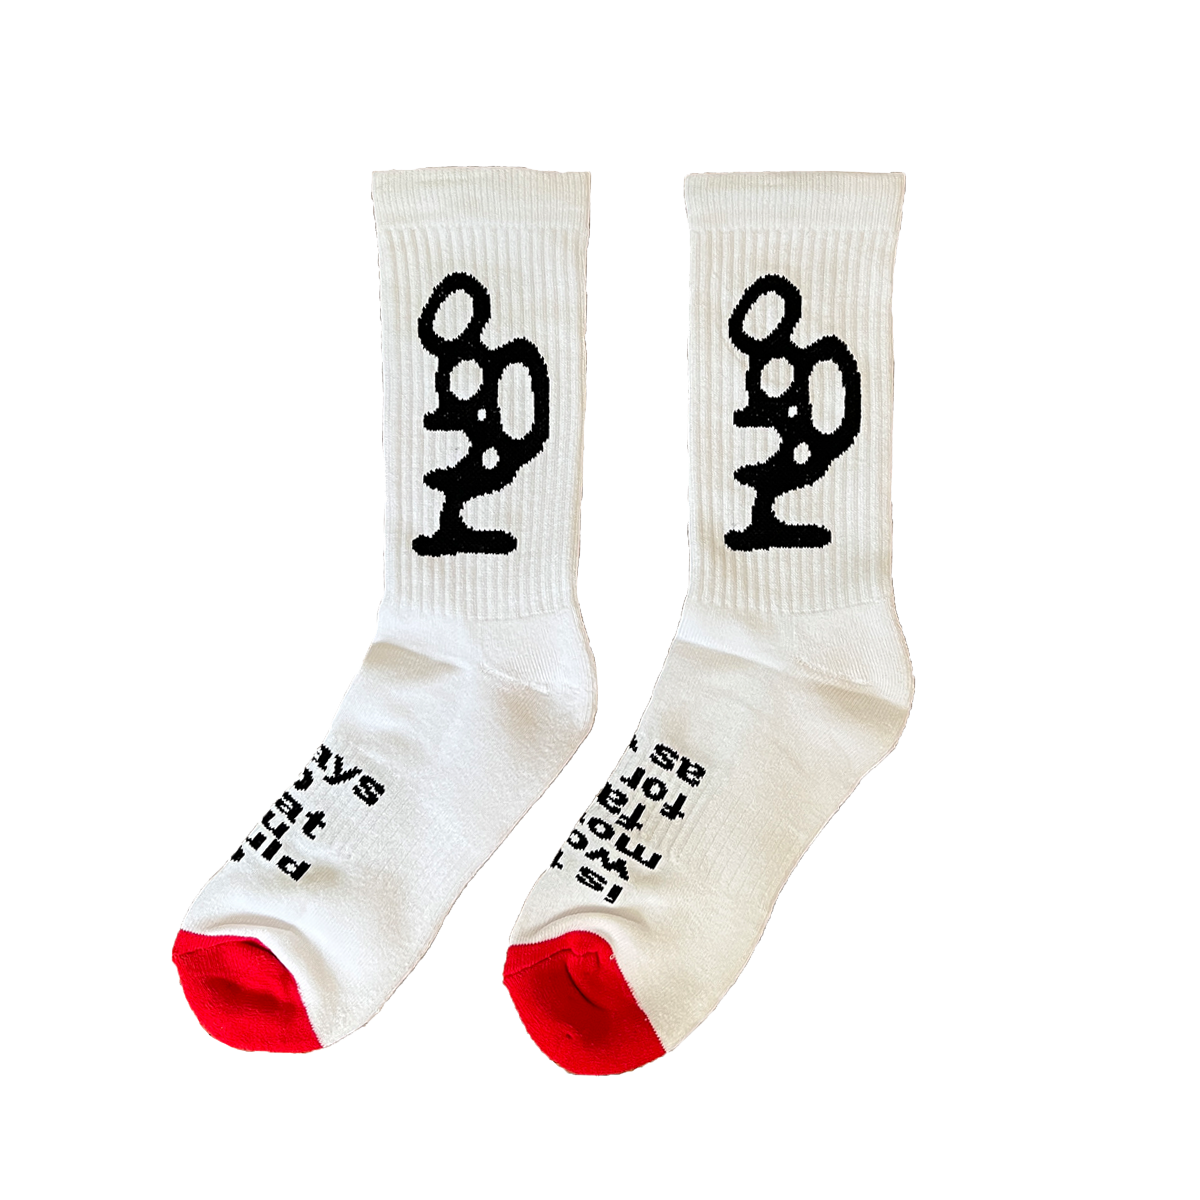 Loyle Carner - hugo x always: Socks - White/Red